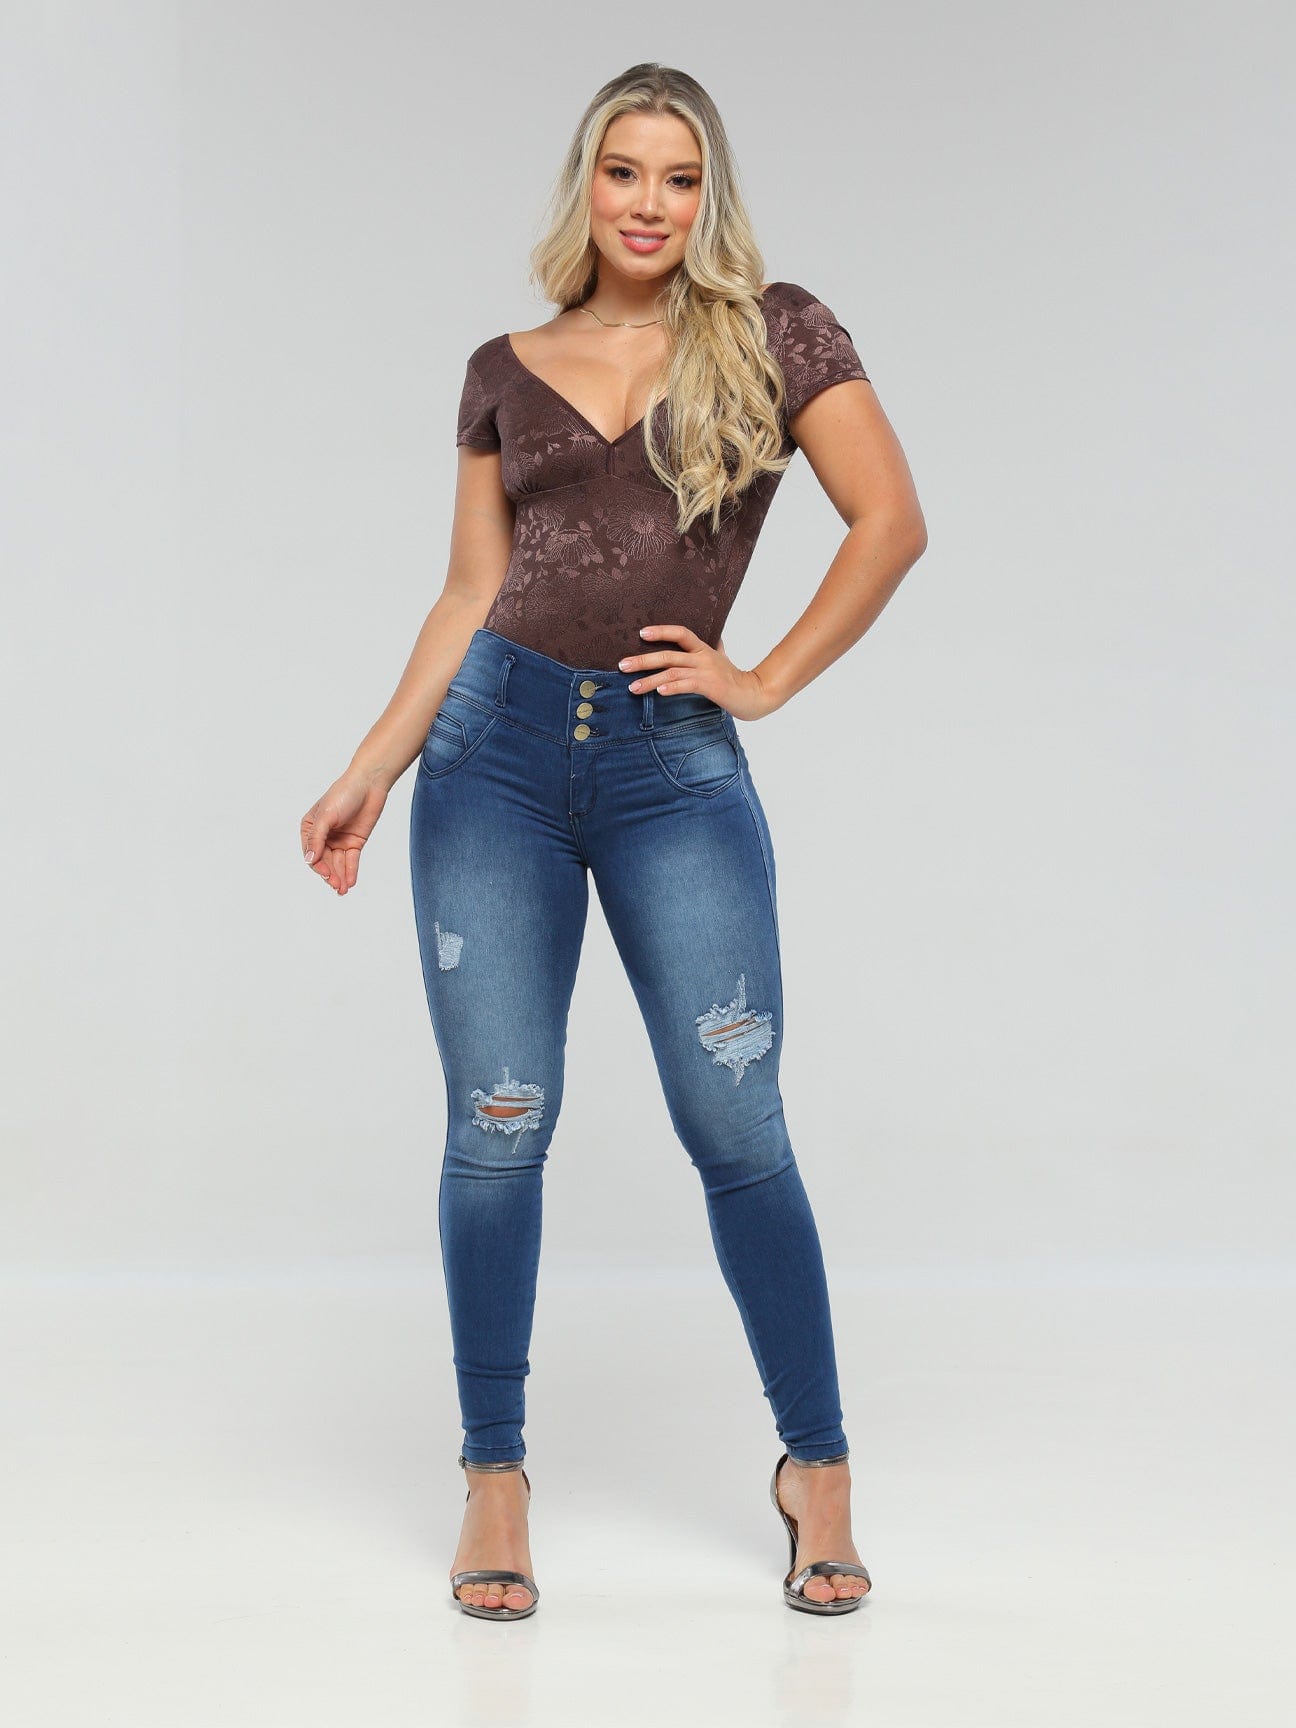 Comprar jeans colombianos de dama online